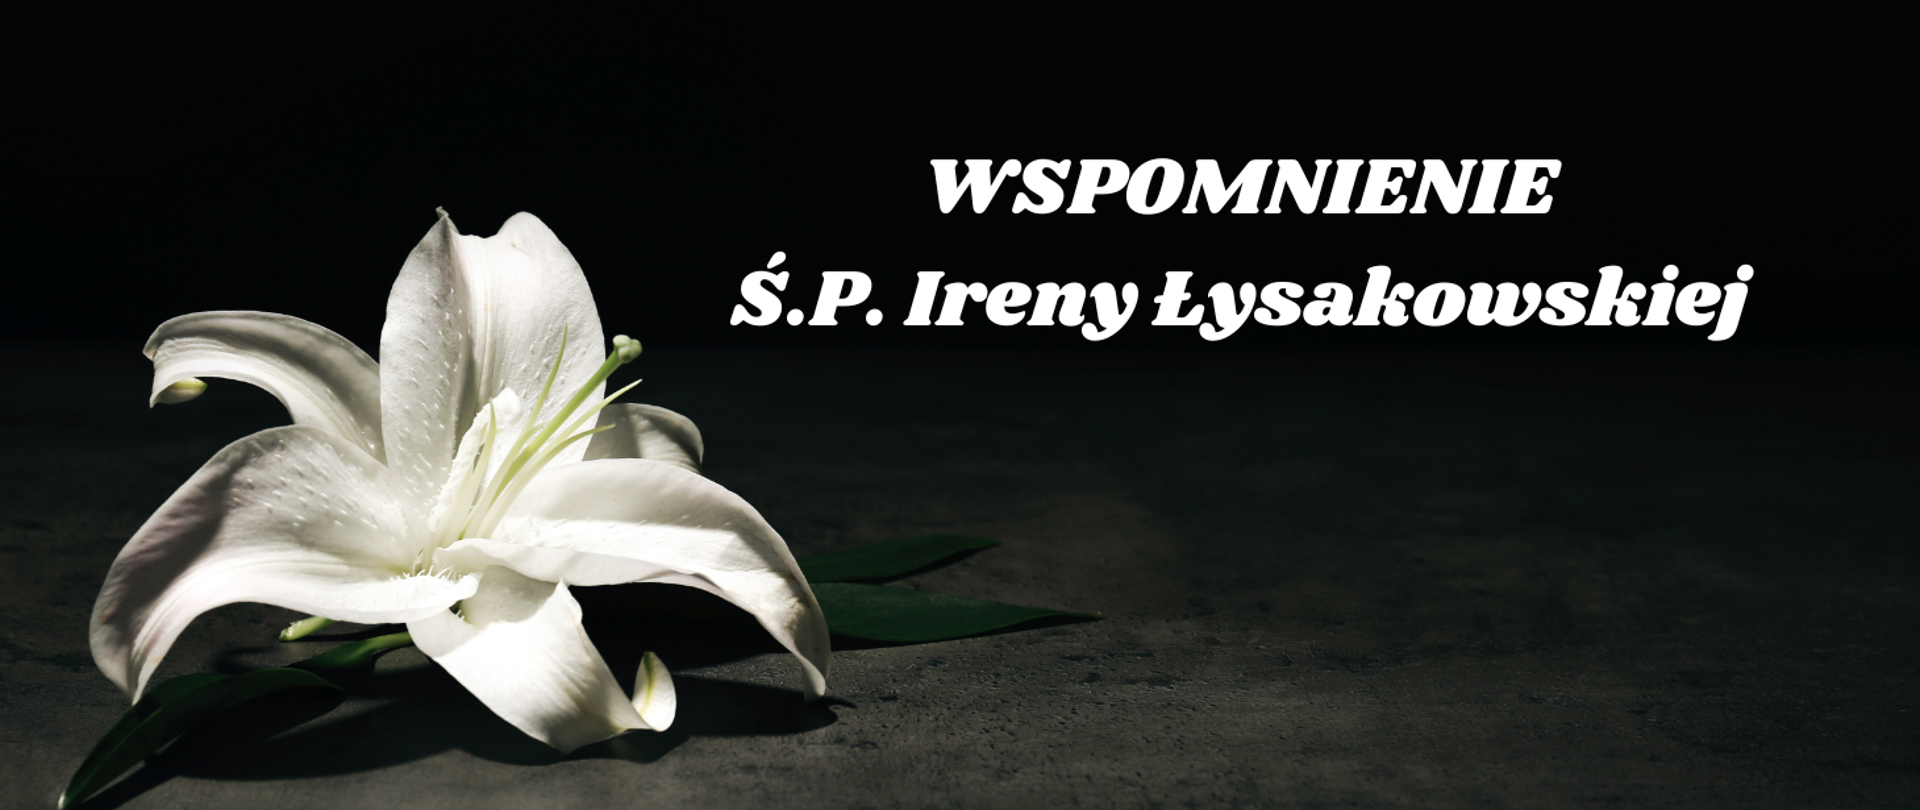 Na czarnym tle w lewym rogu zdjęcie białego kwiatu lilii. Tekst na środku: WSPOMNIENIE S.P. Ireny Łysakowskiej.